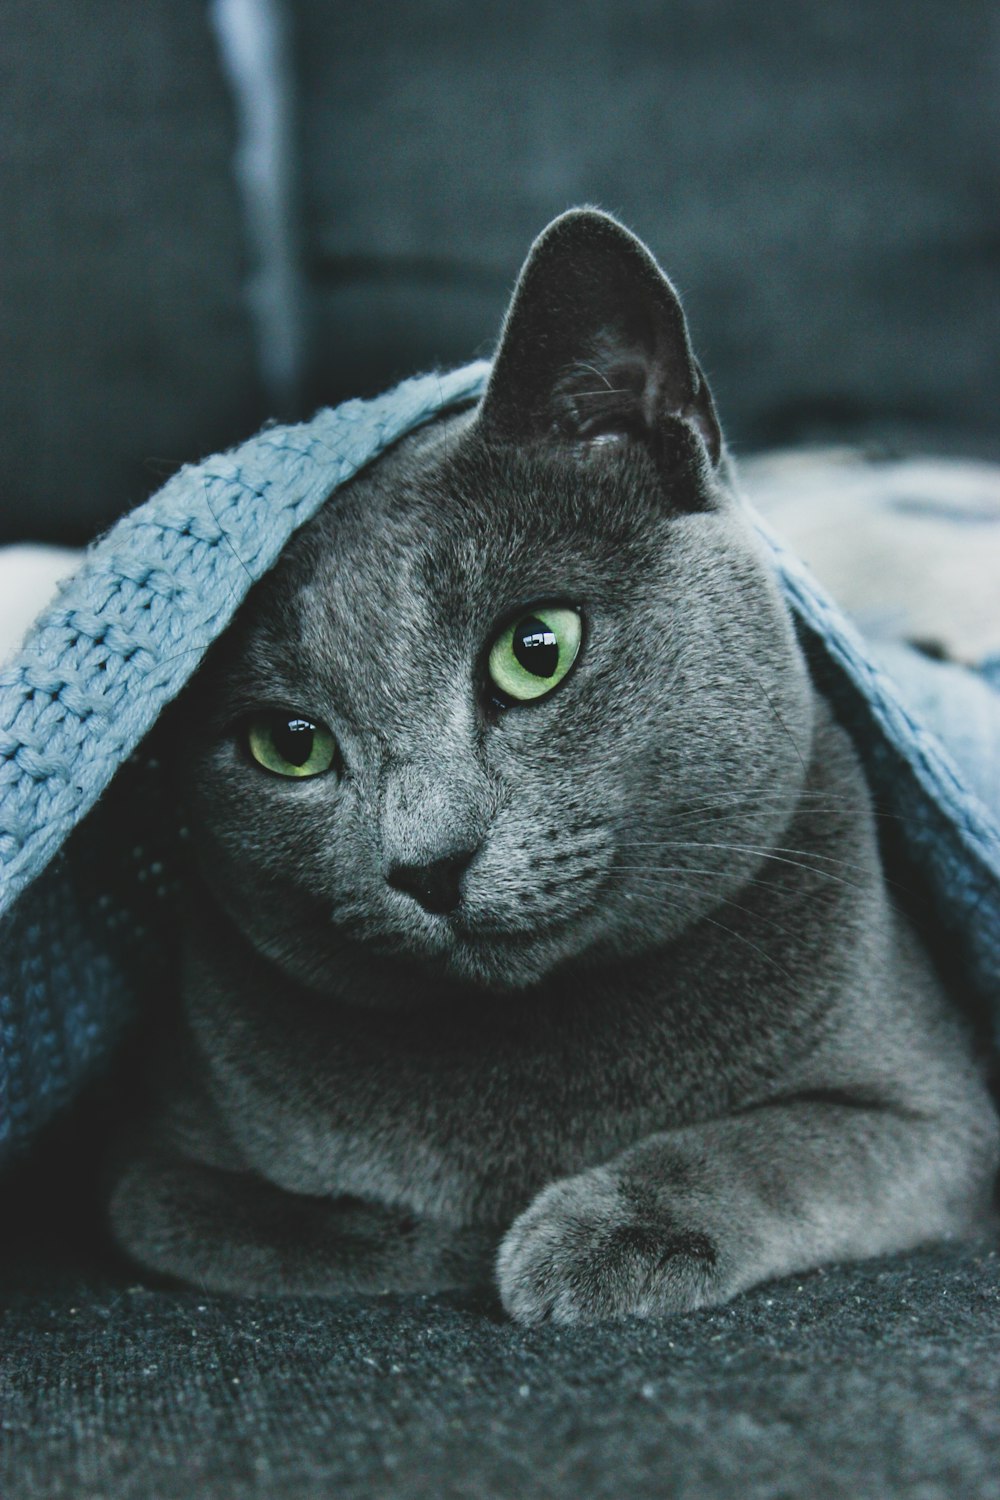 russian blue cat wearing blue knit cap